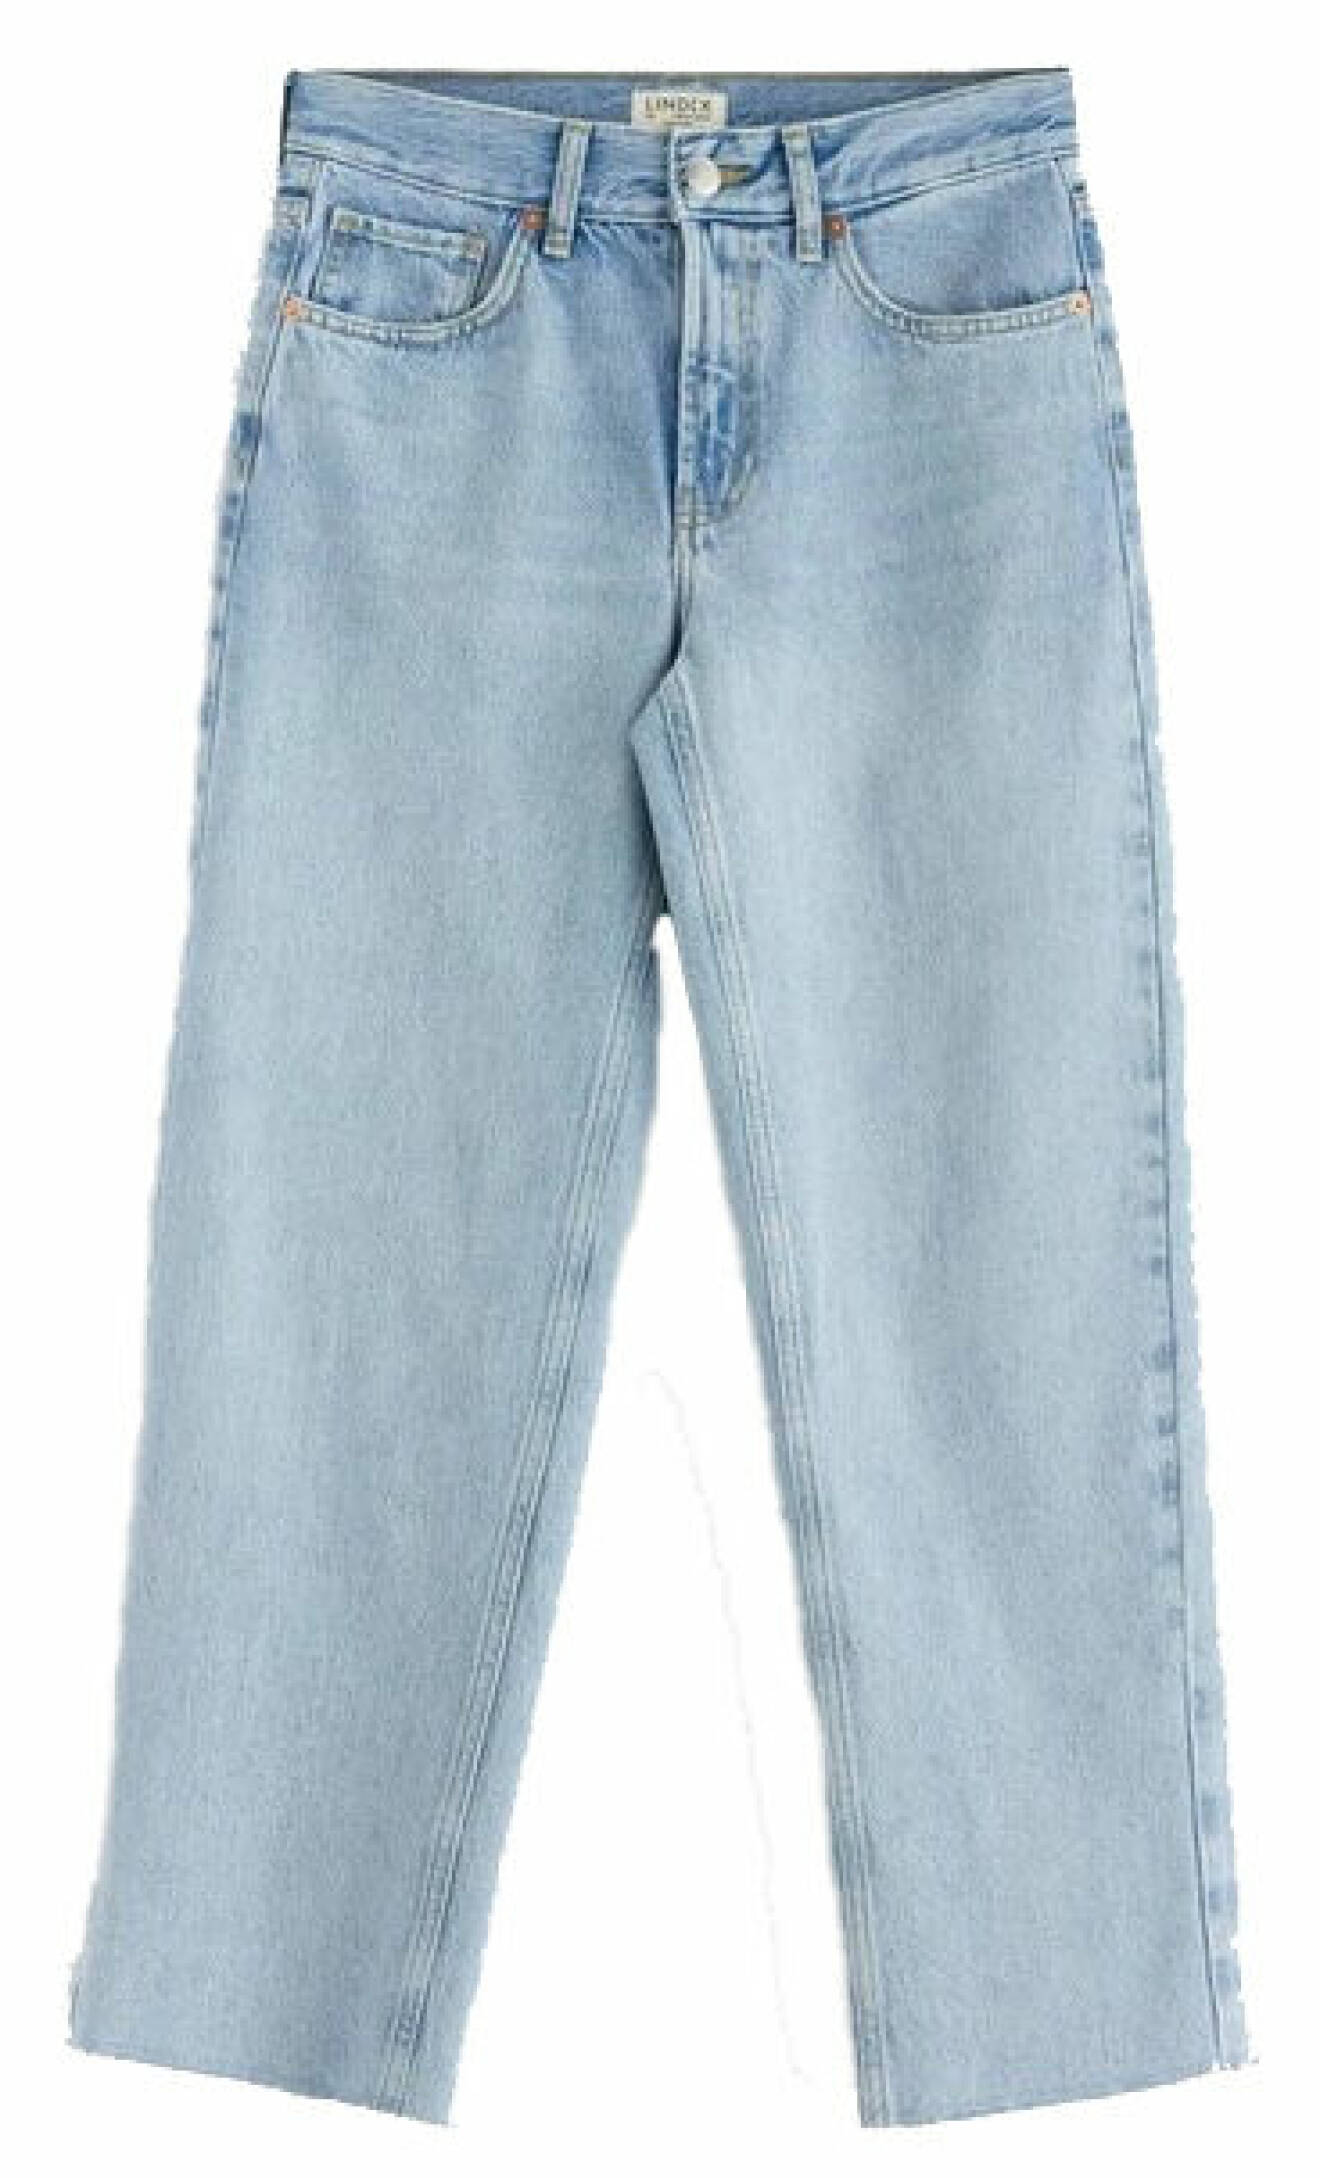 Ljusblå jeans från Lindex. 